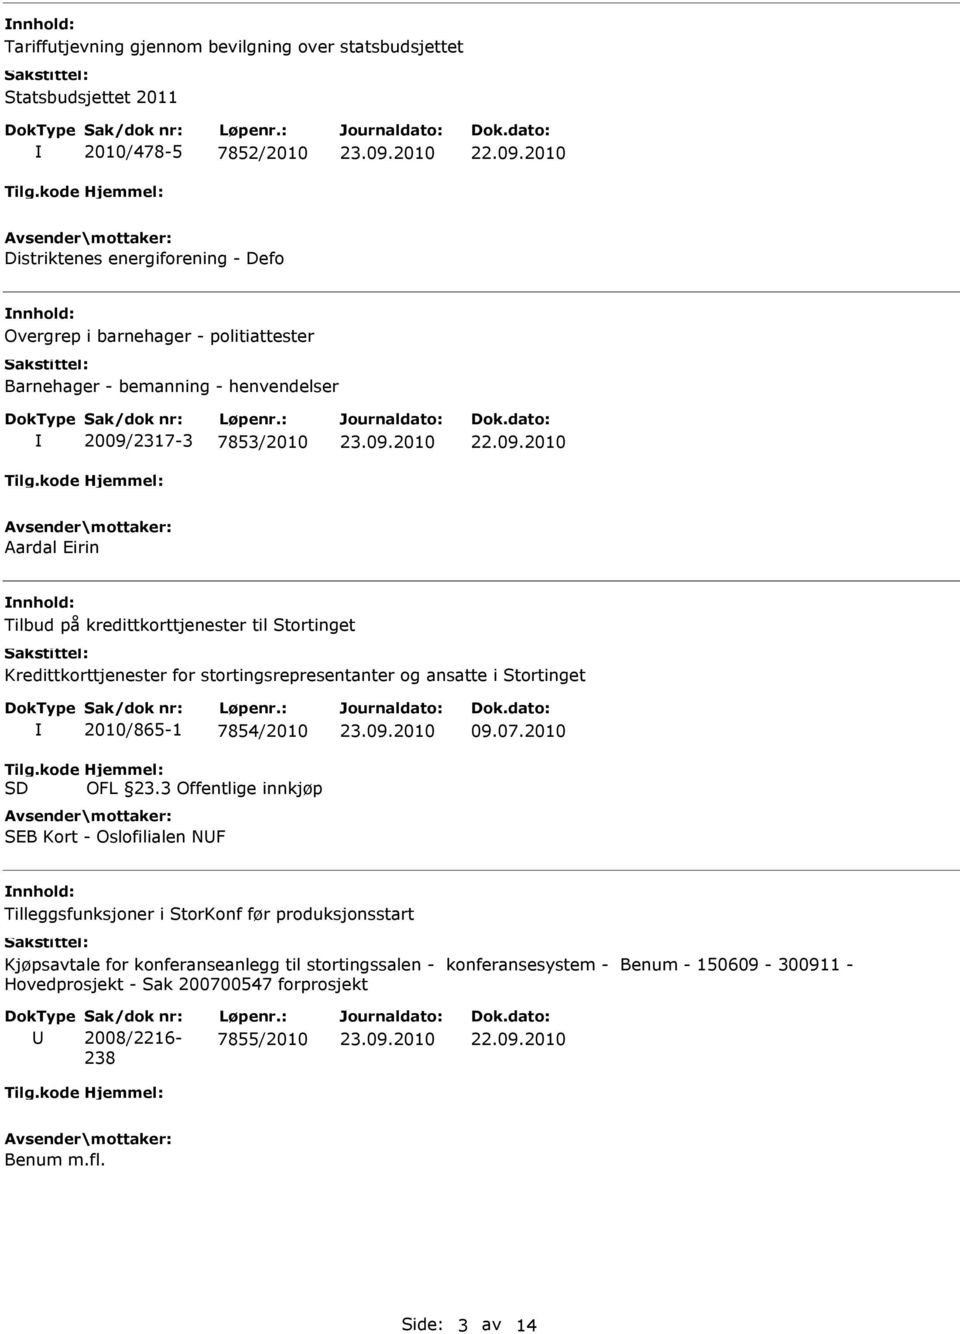 ansatte i Stortinget 2010/865-1 7854/2010 OFL 23.3 Offentlige innkjøp SEB Kort - Oslofilialen NF 09.07.